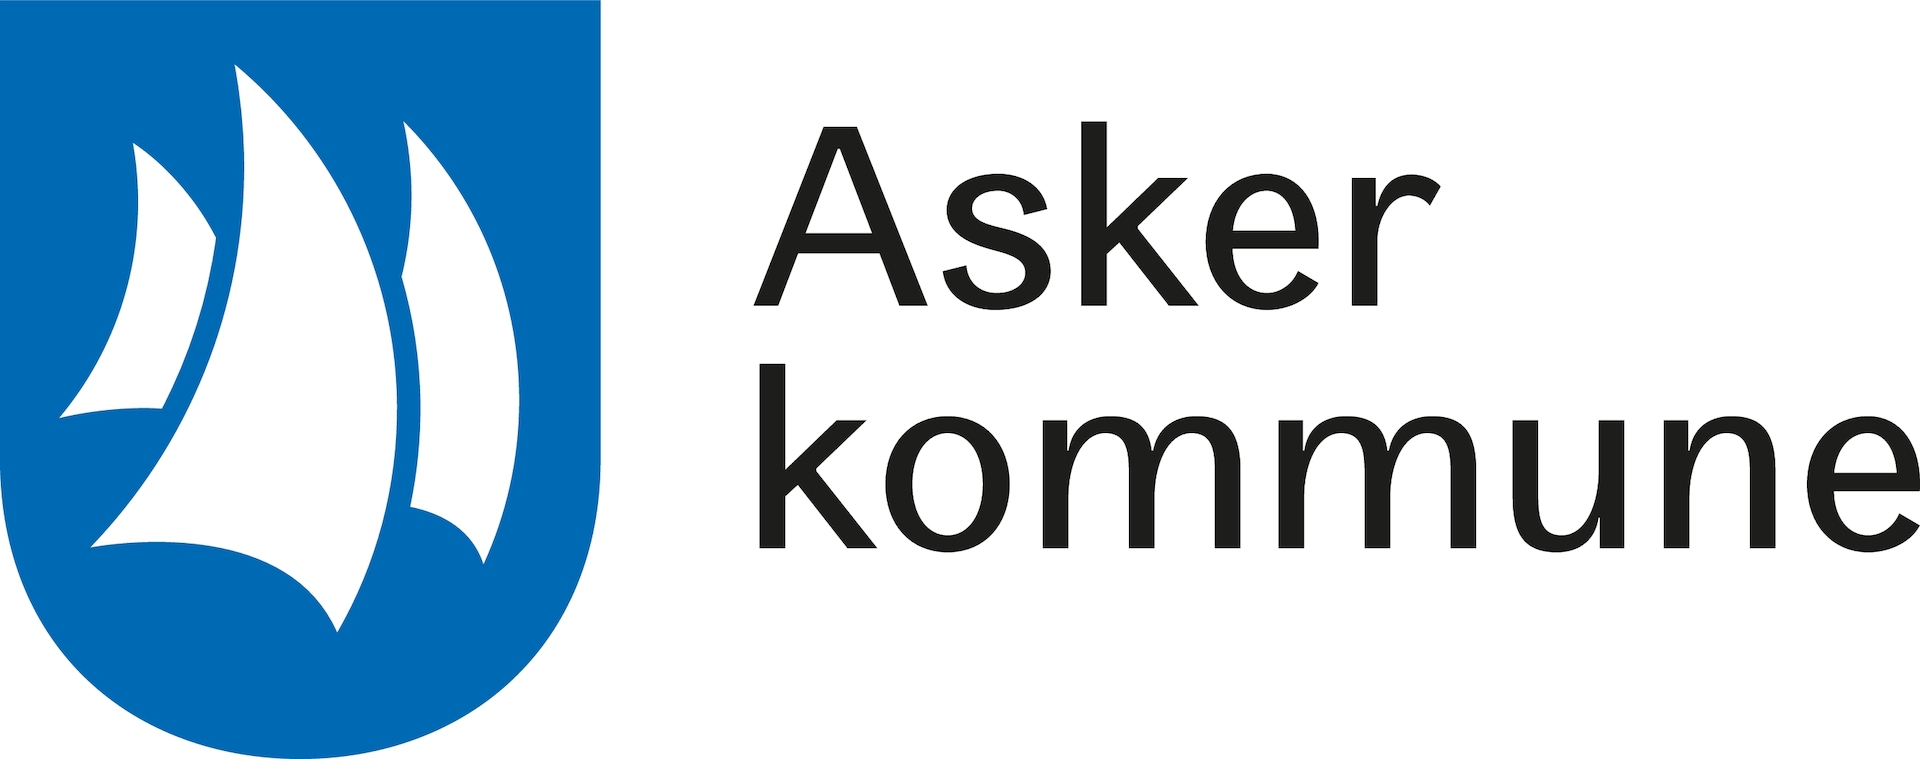 Asker Kommune Logo Formell Cmyk 190611